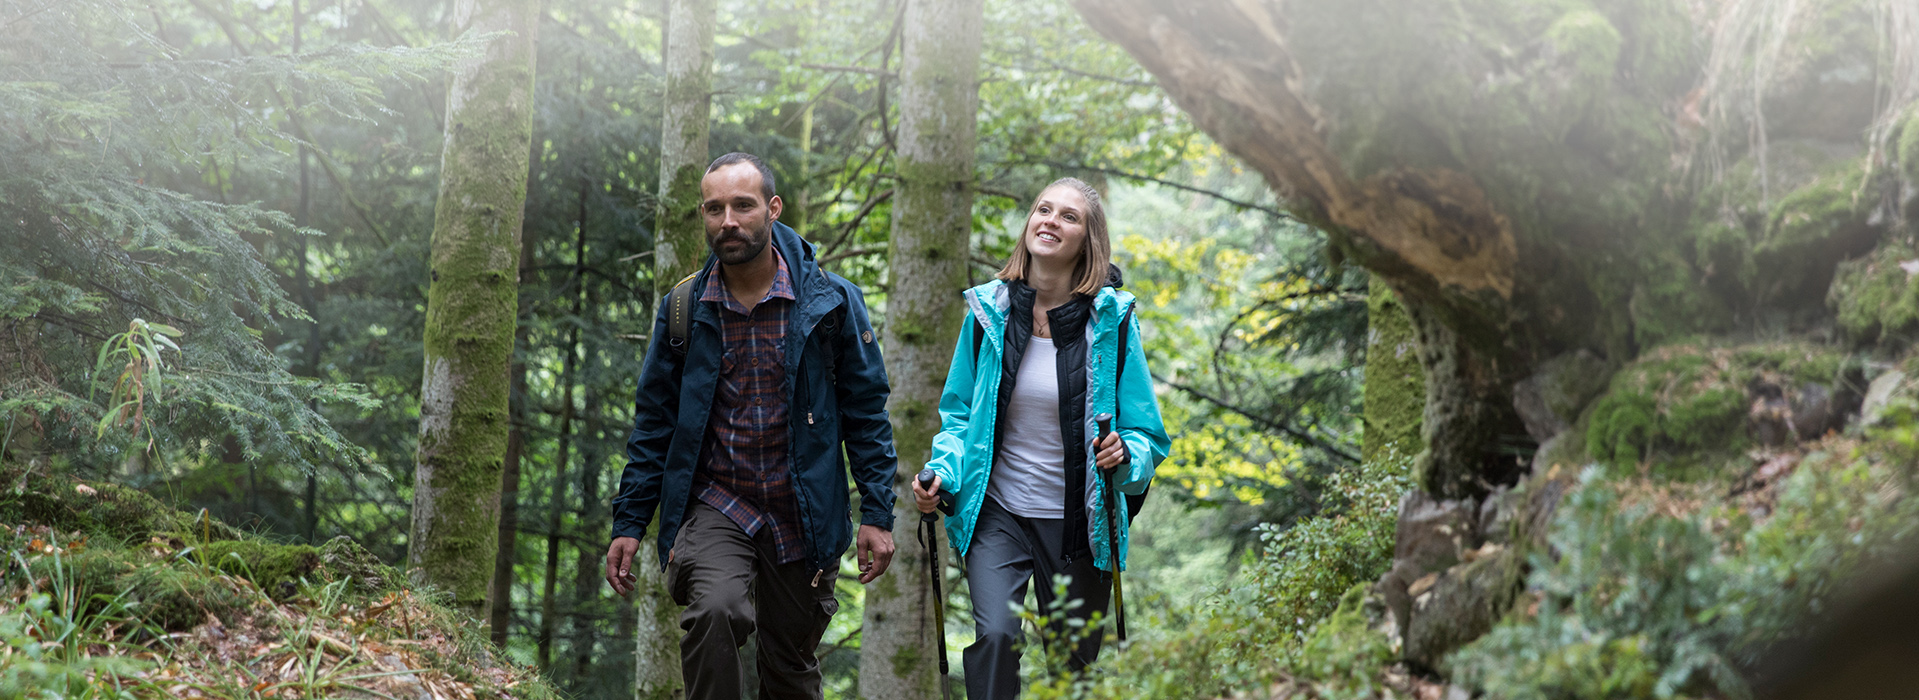 Ein Mann und eine Frau wandern im Wald. Im Hintergrund stehen Bäume, links ragt ein Fels ins Bild. 